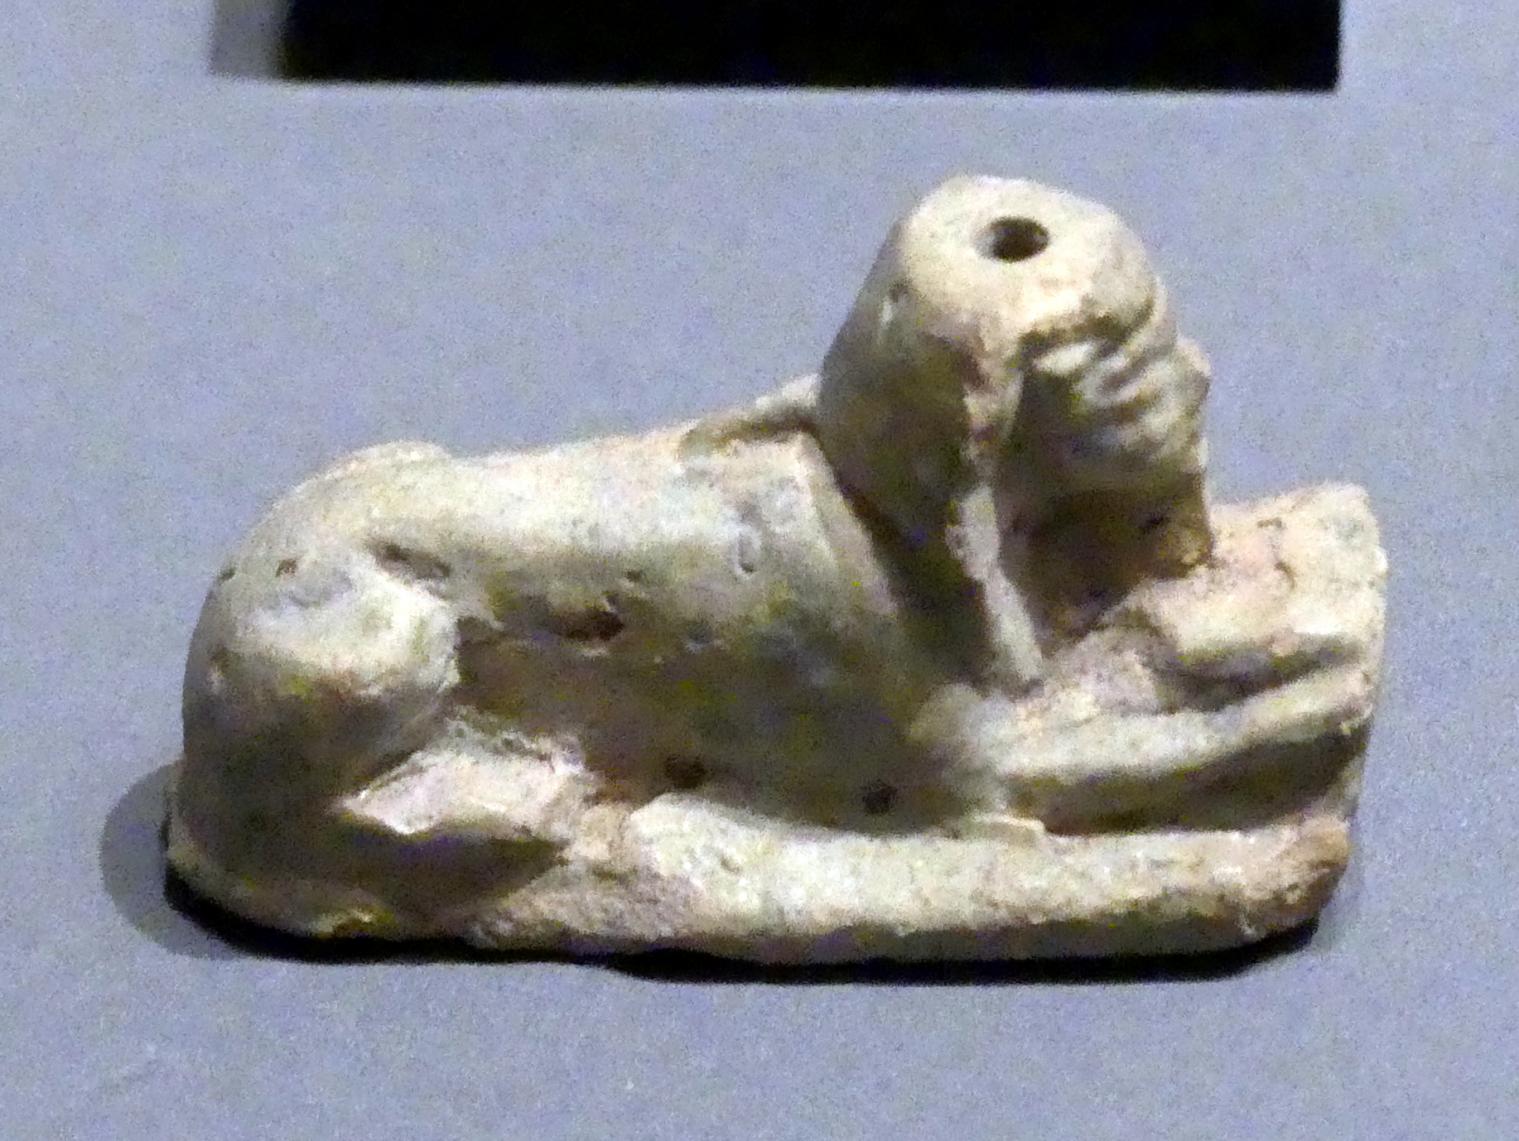 Sphinxfigur mit menschlichen Armen, Erscheinungsform des Königs, 18. Dynastie, 1210 - 966 v. Chr., 1500 - 1450 v. Chr.